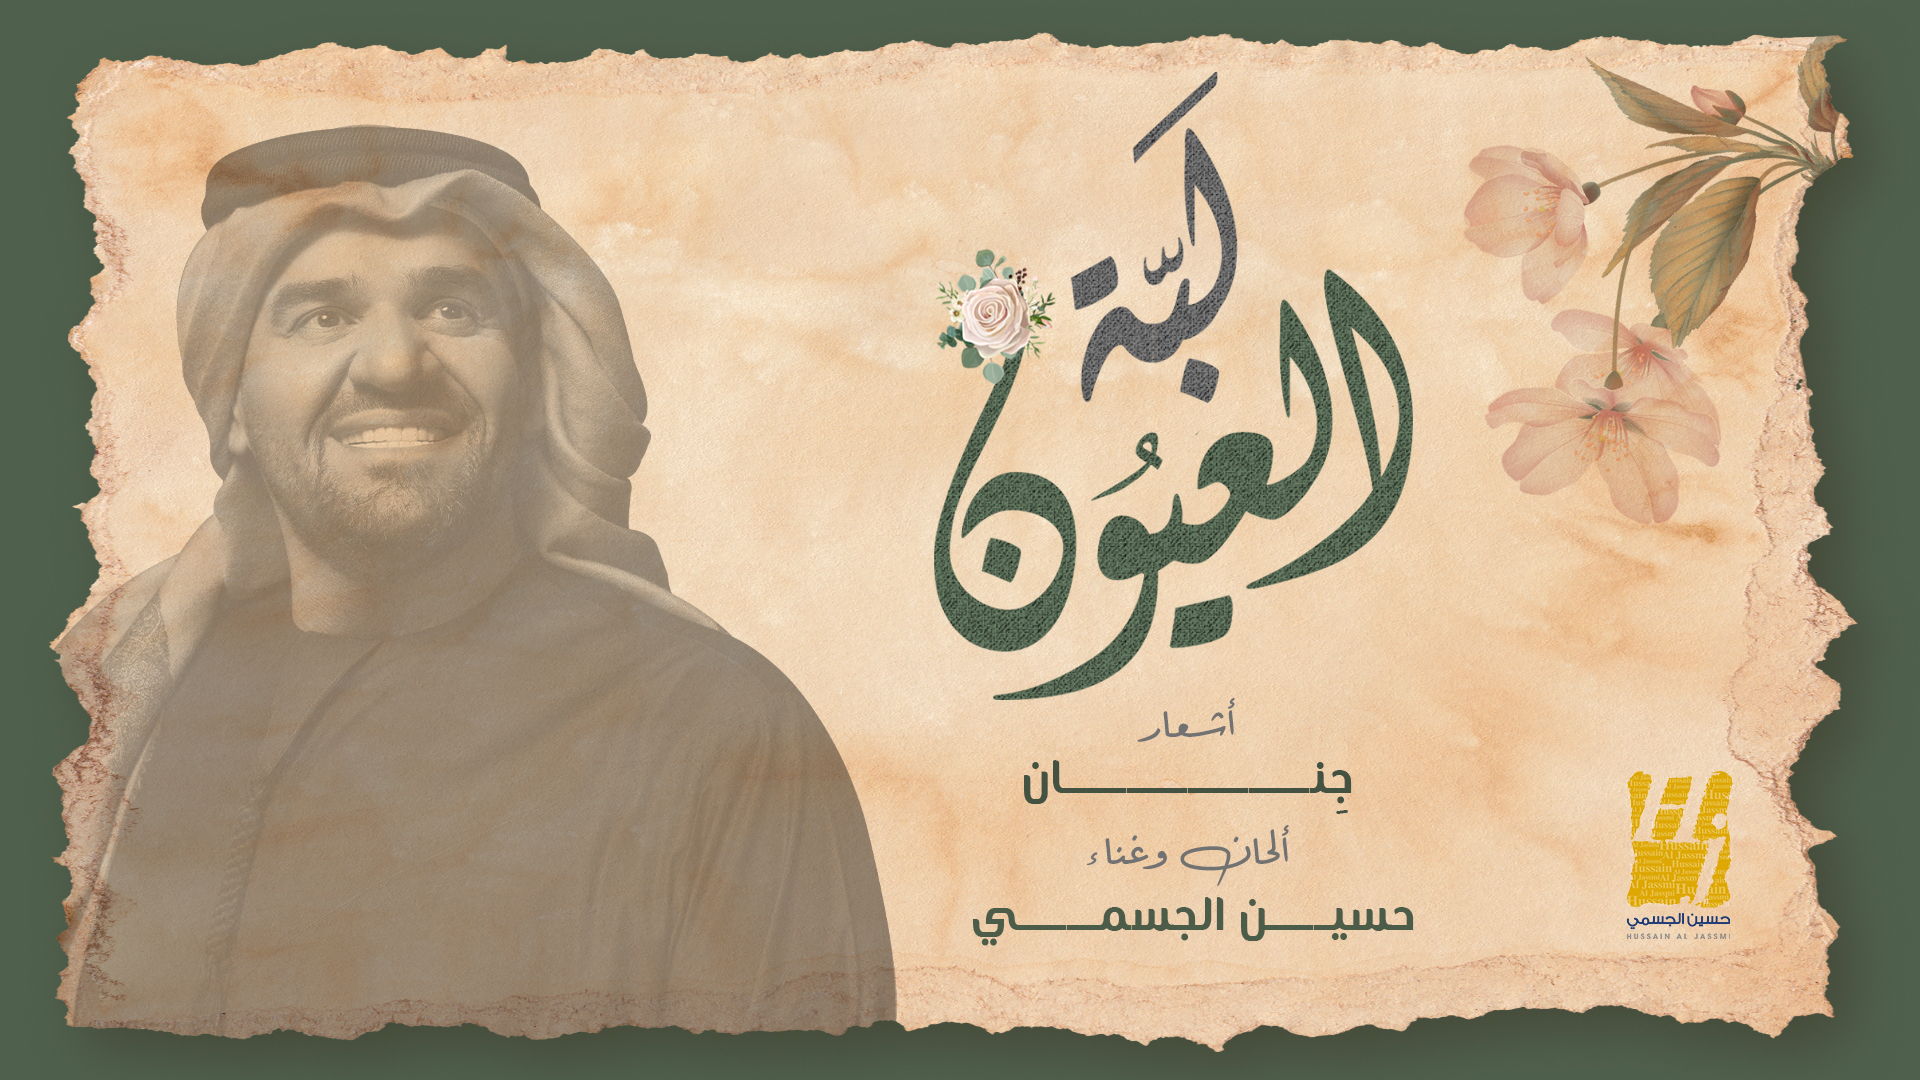 حسين الجسمي يجدد التعاون مع أشعار "جِنان" بأغنية "لبّة العيون"